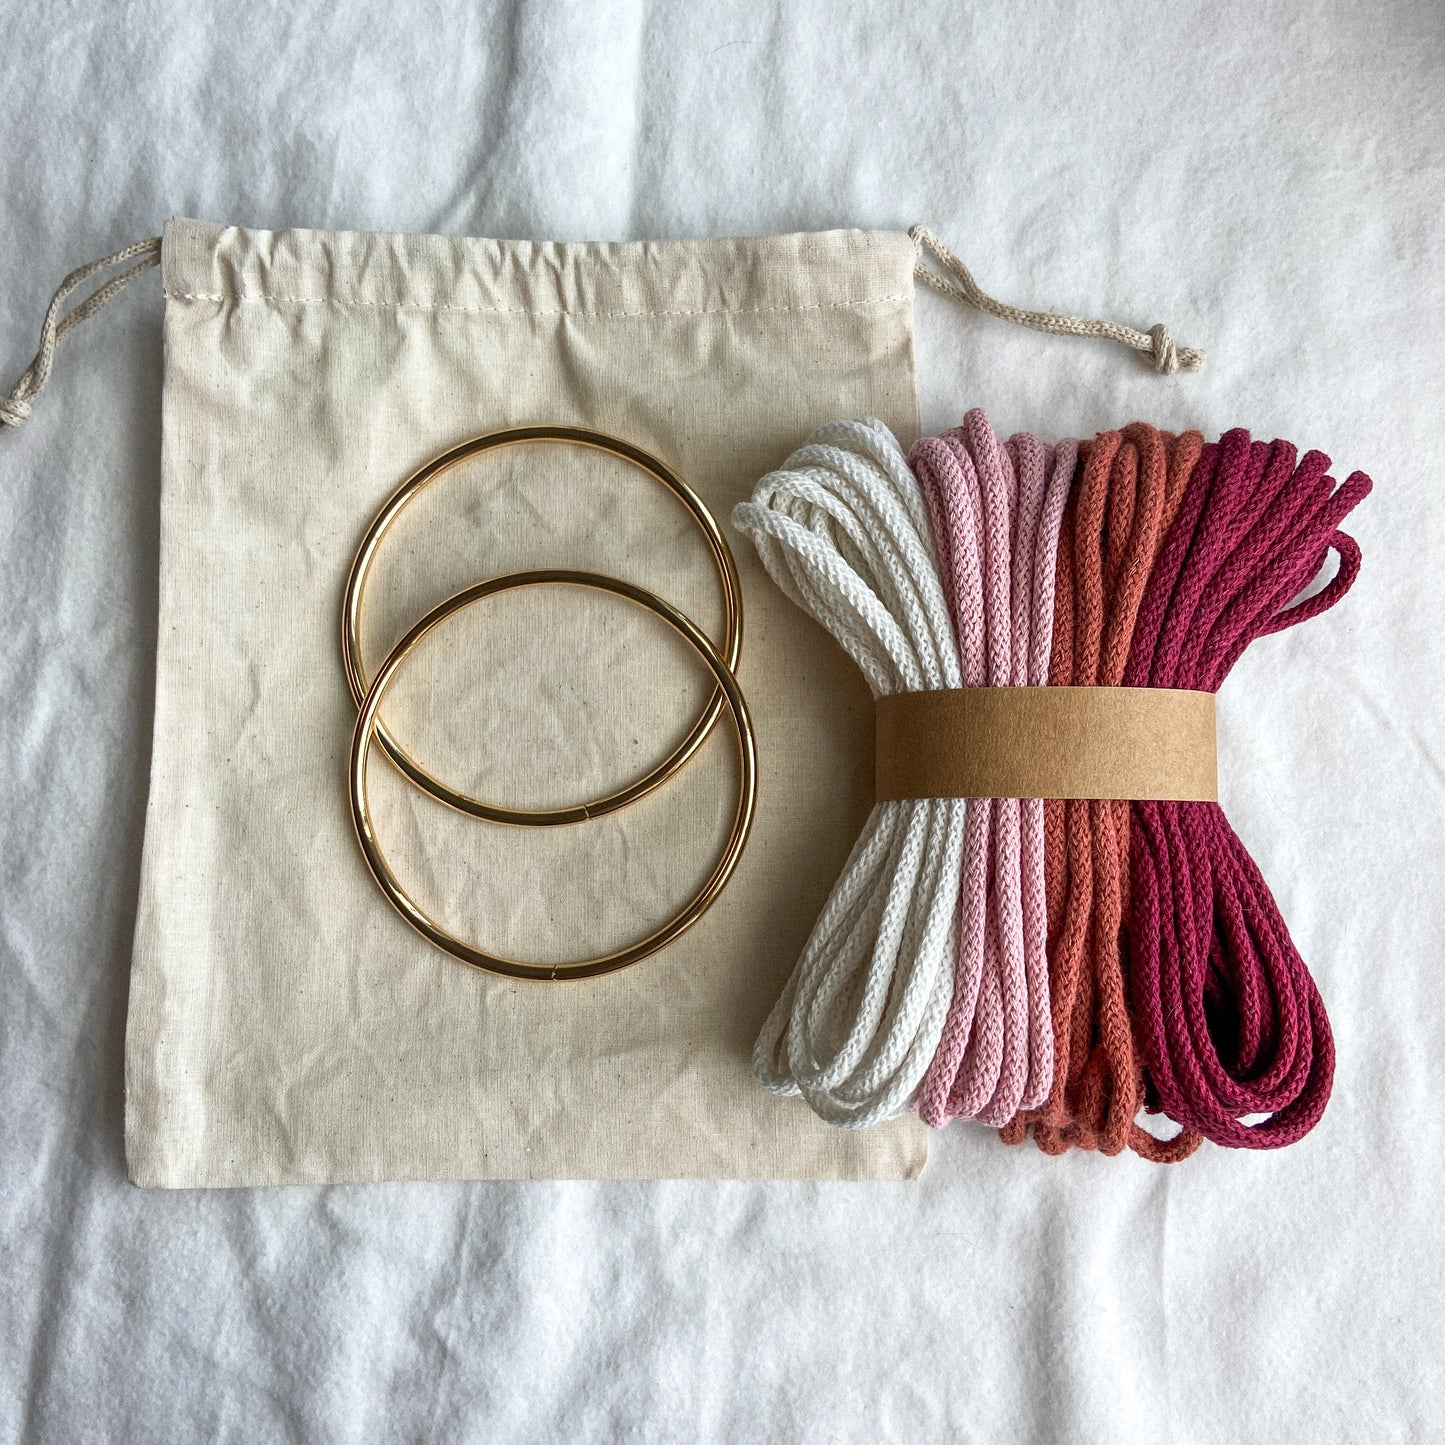 DIY Kit | Macrame "Garden" Net Bag